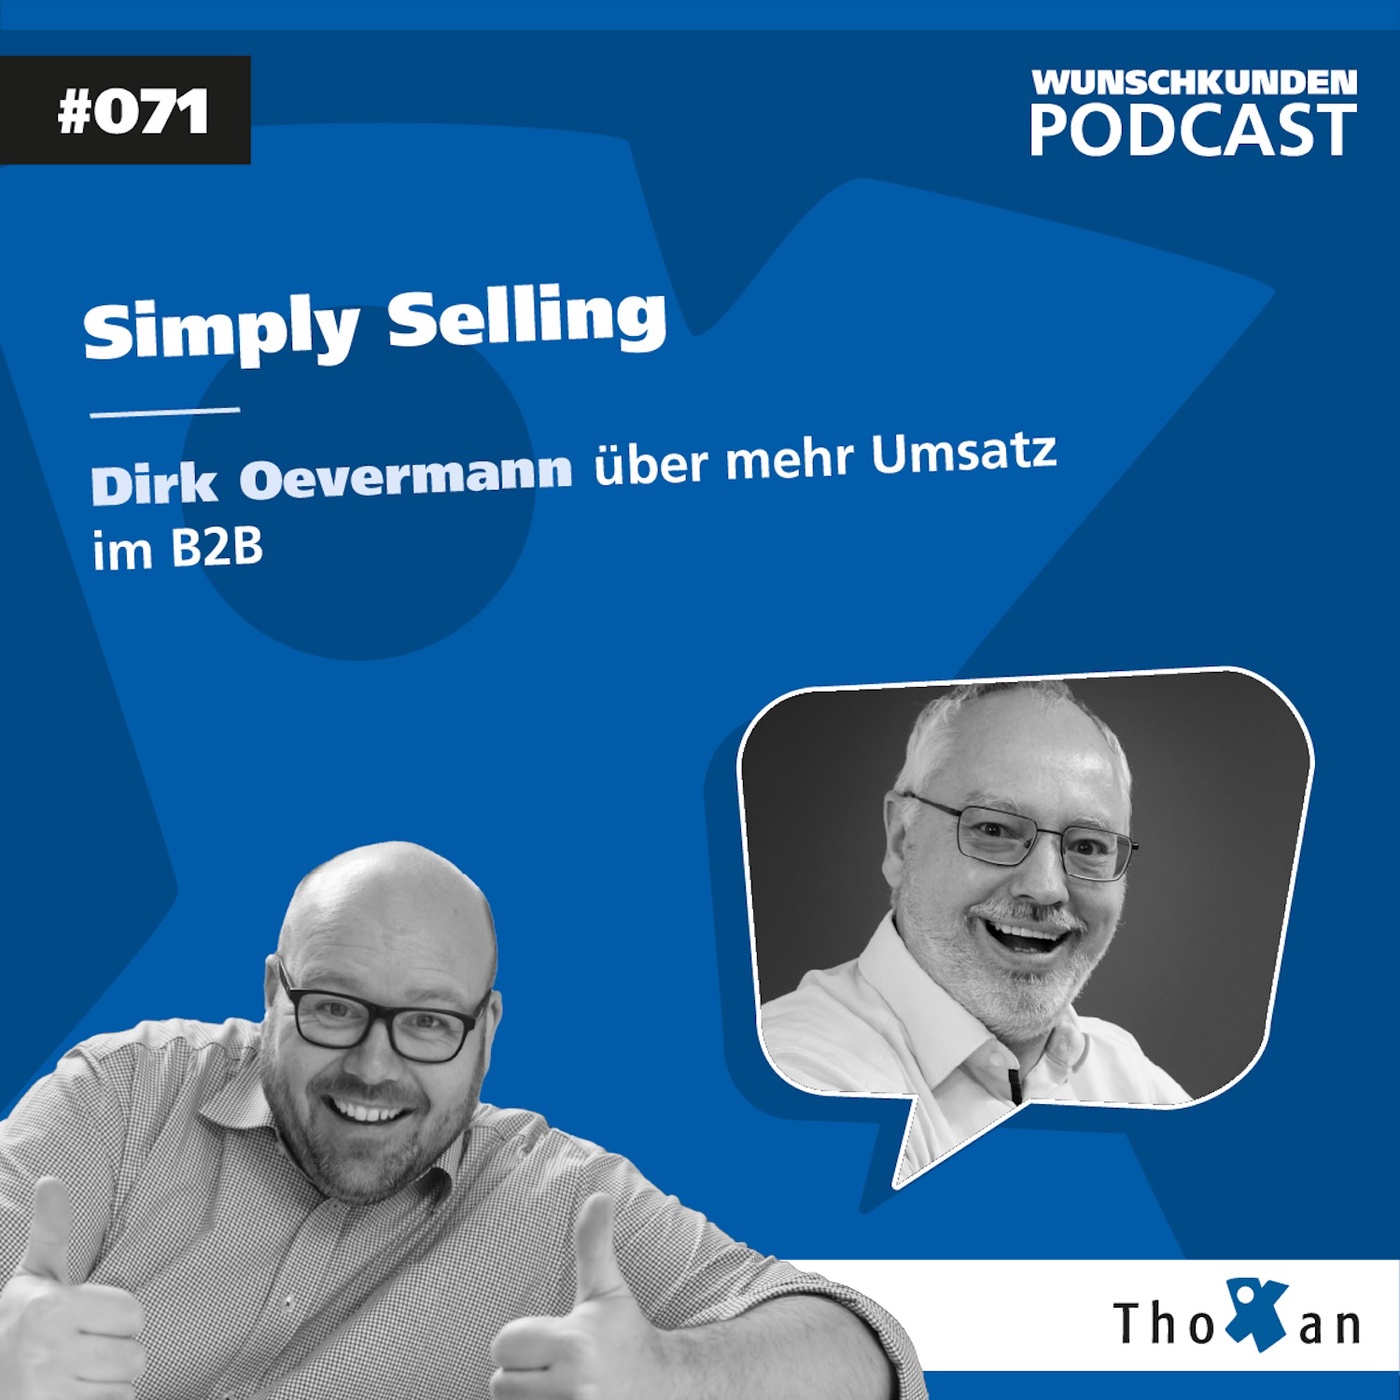 Simply Selling: Dirk Oevermann über mehr Umsatz im B2B